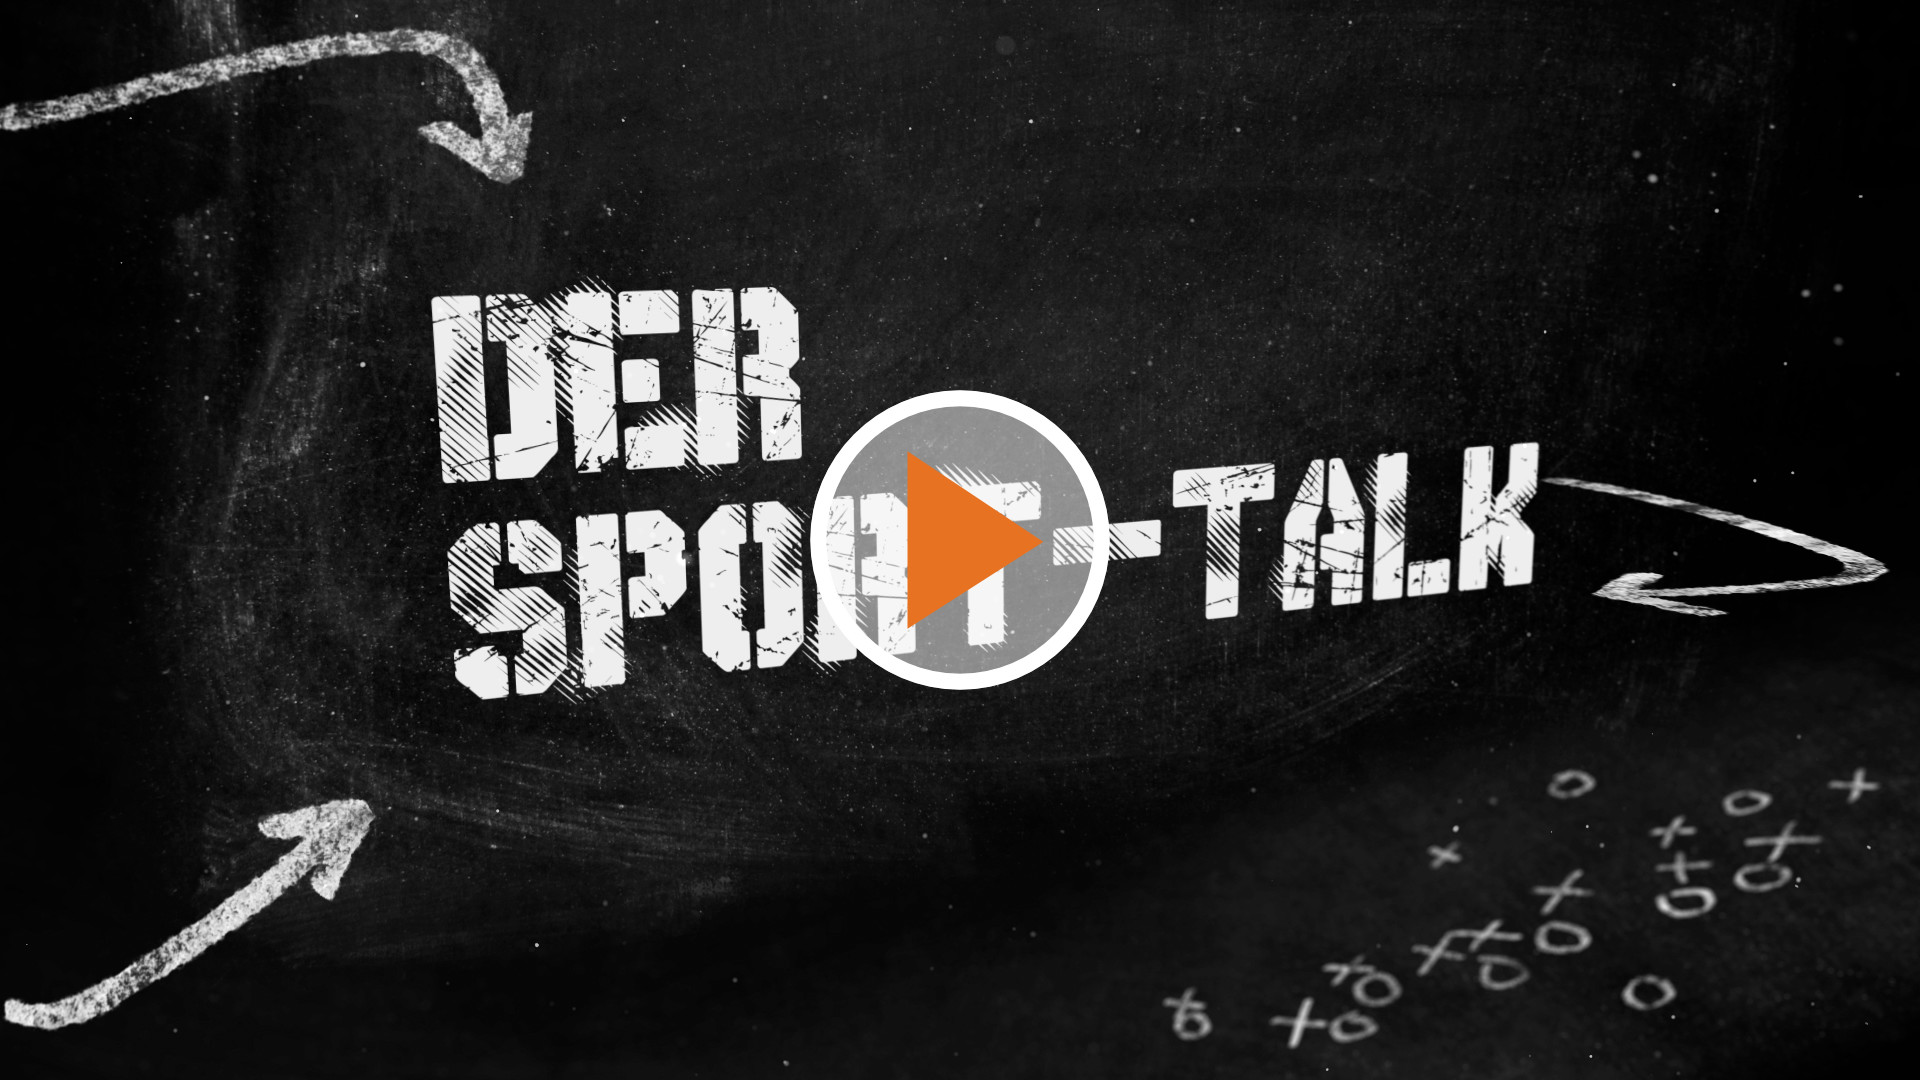 Screen_Sport Talk